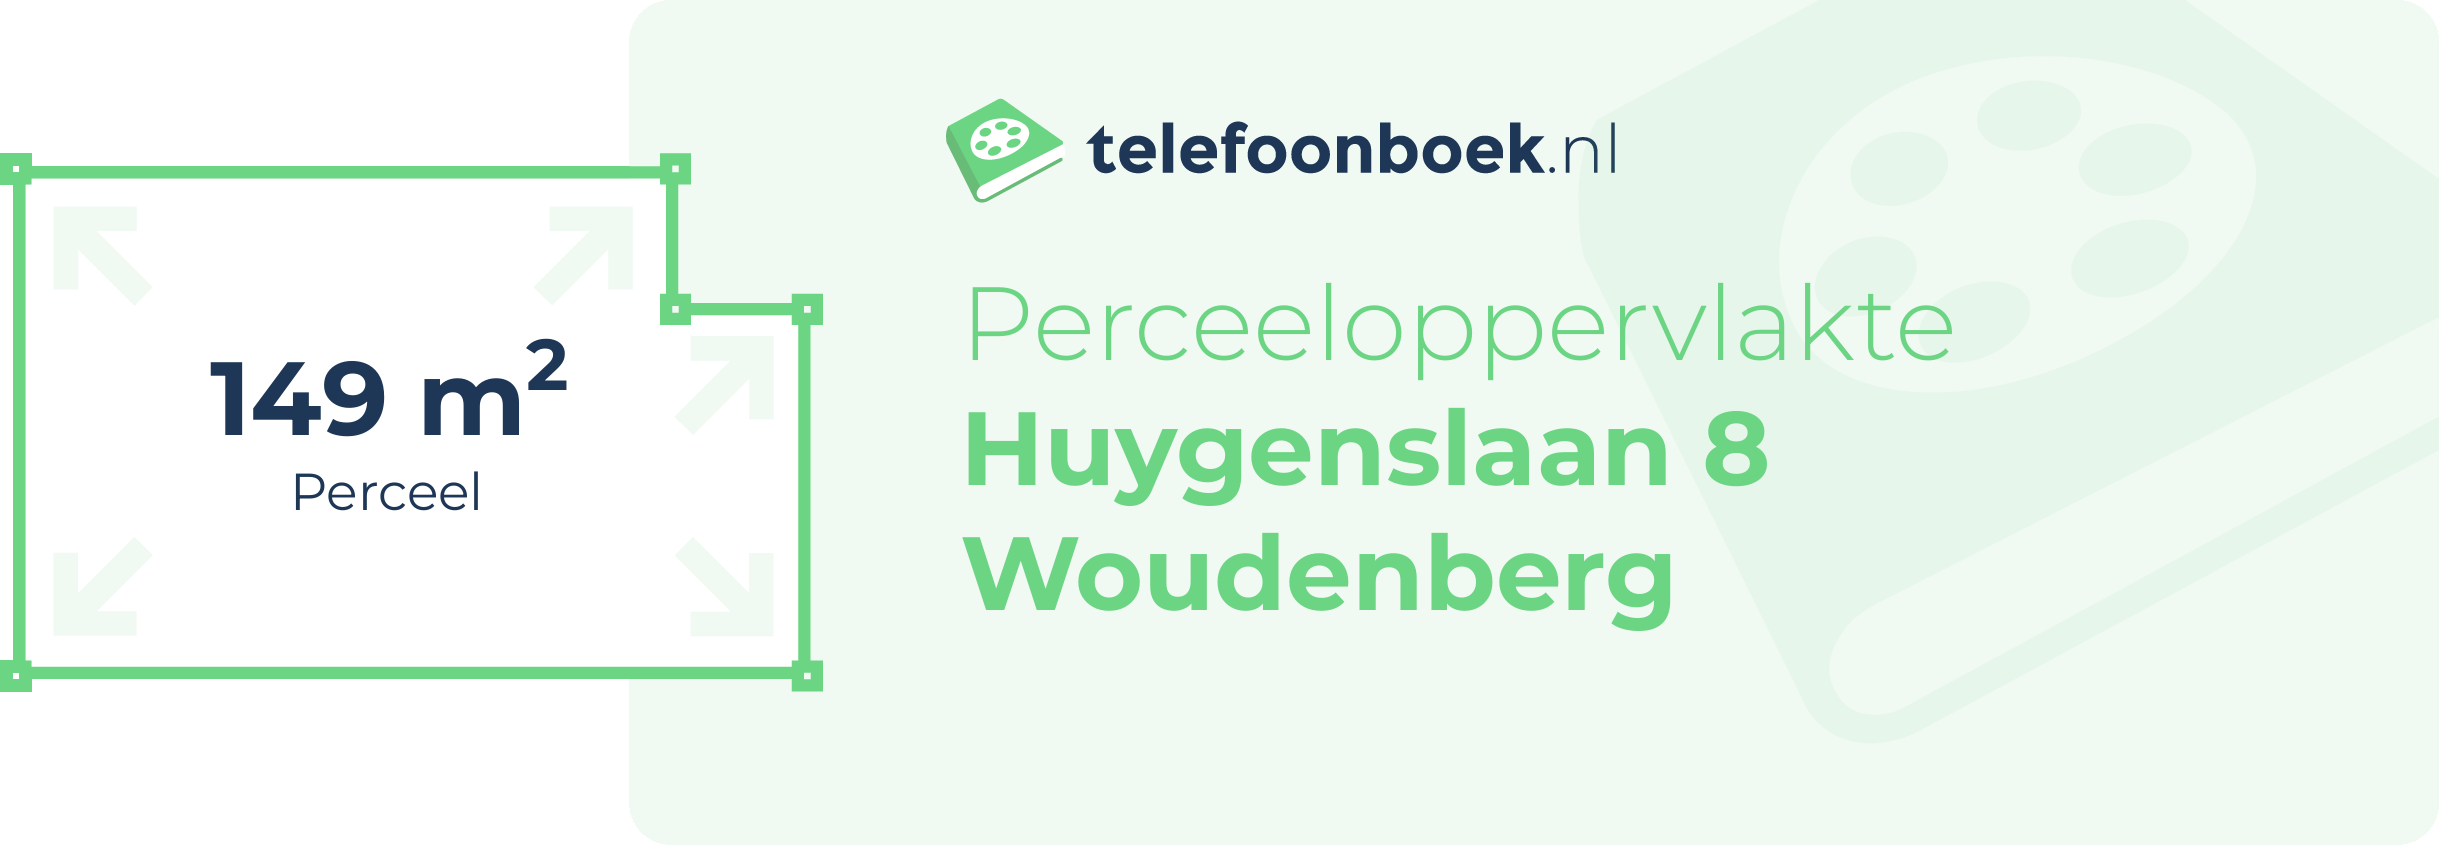 Perceeloppervlakte Huygenslaan 8 Woudenberg